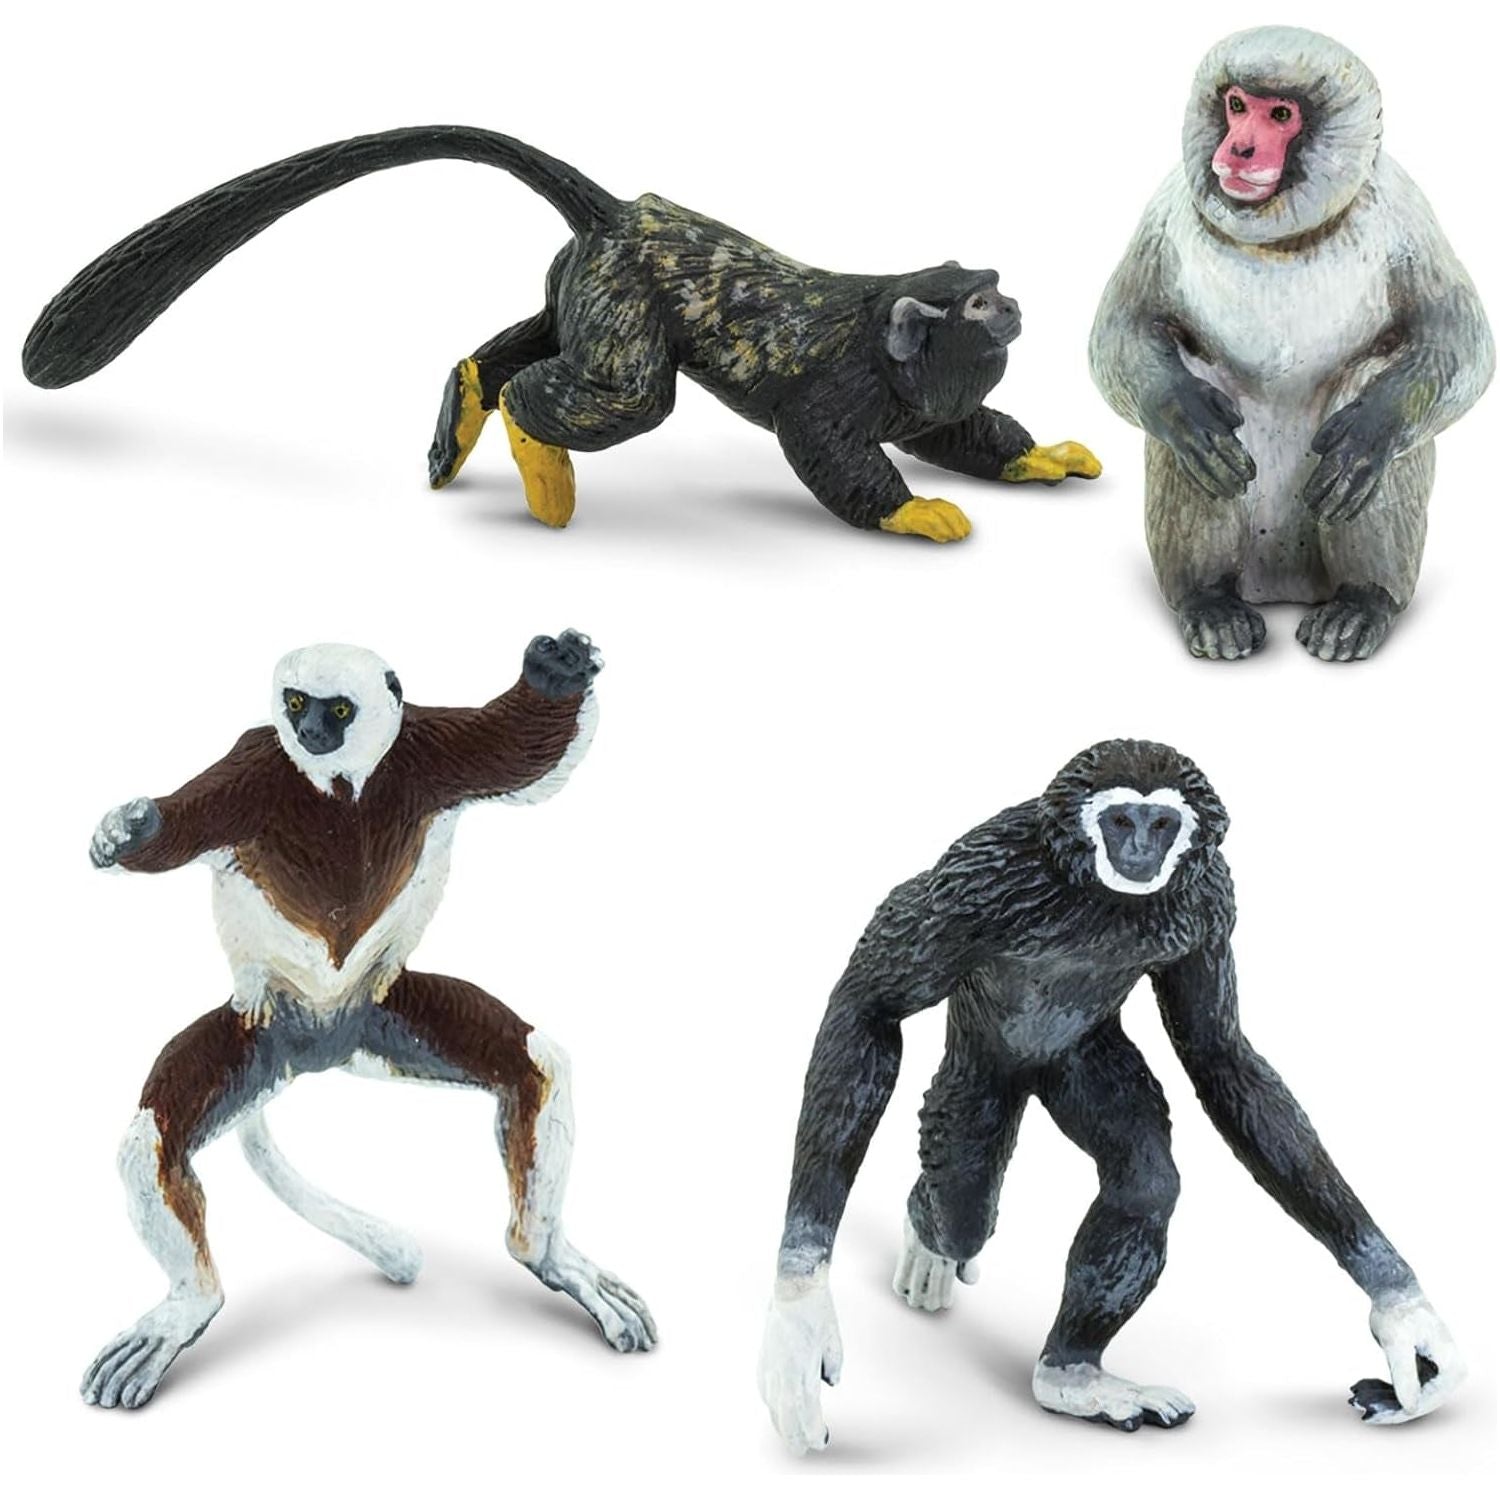 Primate Miniature Figures